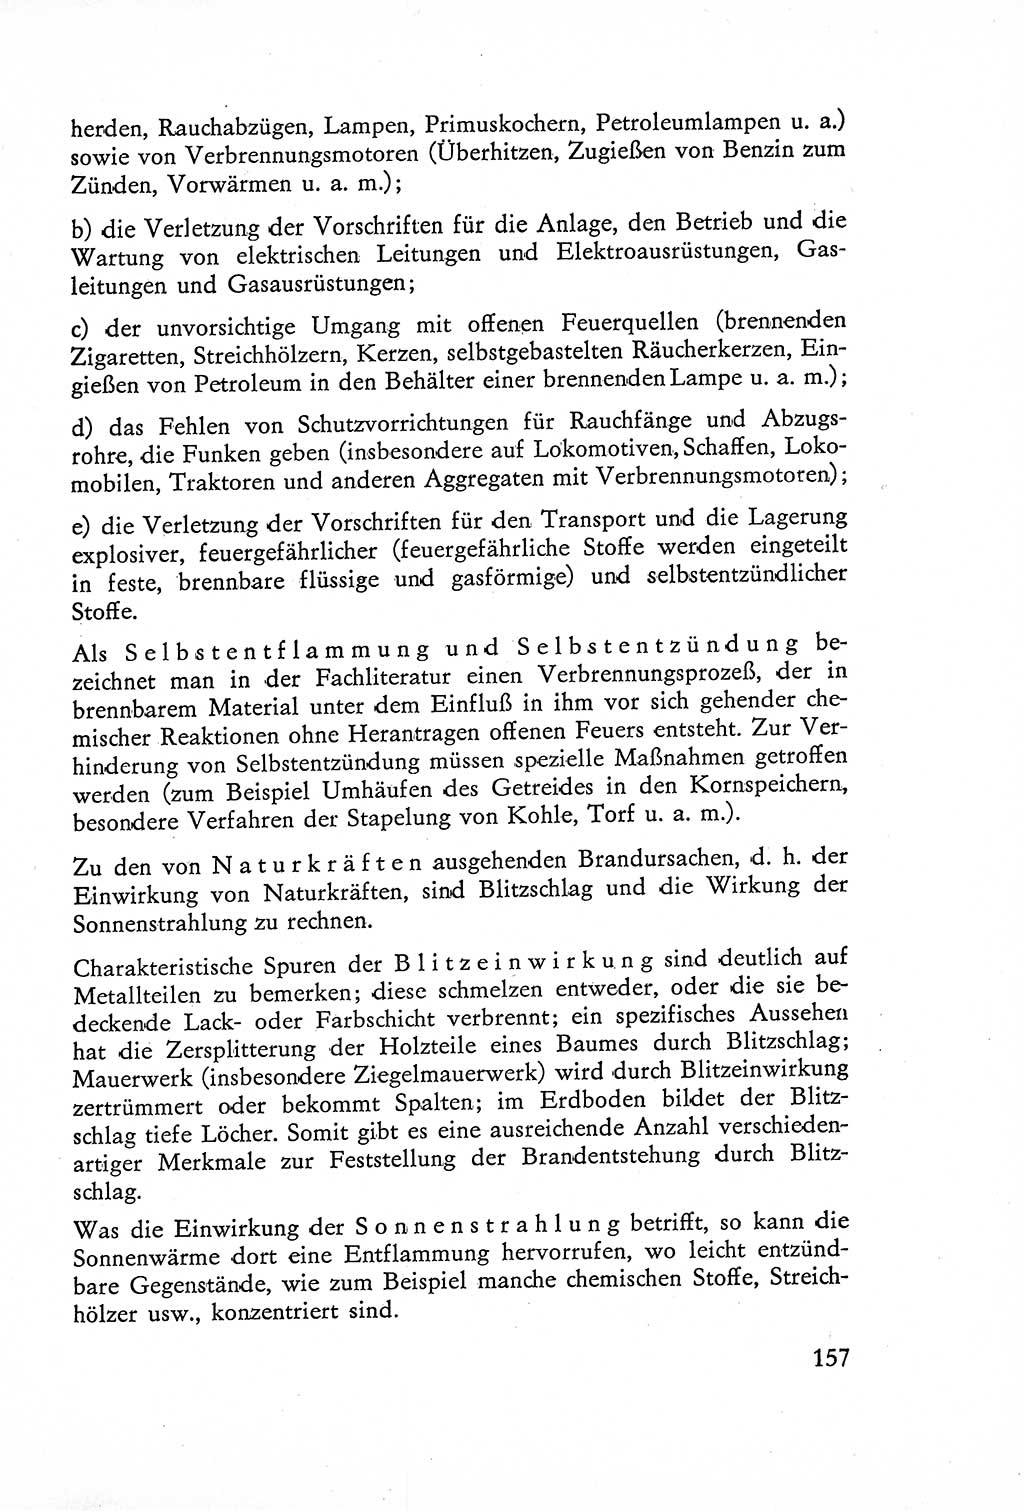 Die Untersuchung einzelner Verbrechensarten [Deutsche Demokratische Republik (DDR)] 1960, Seite 157 (Unters. Verbr.-Art. DDR 1960, S. 157)